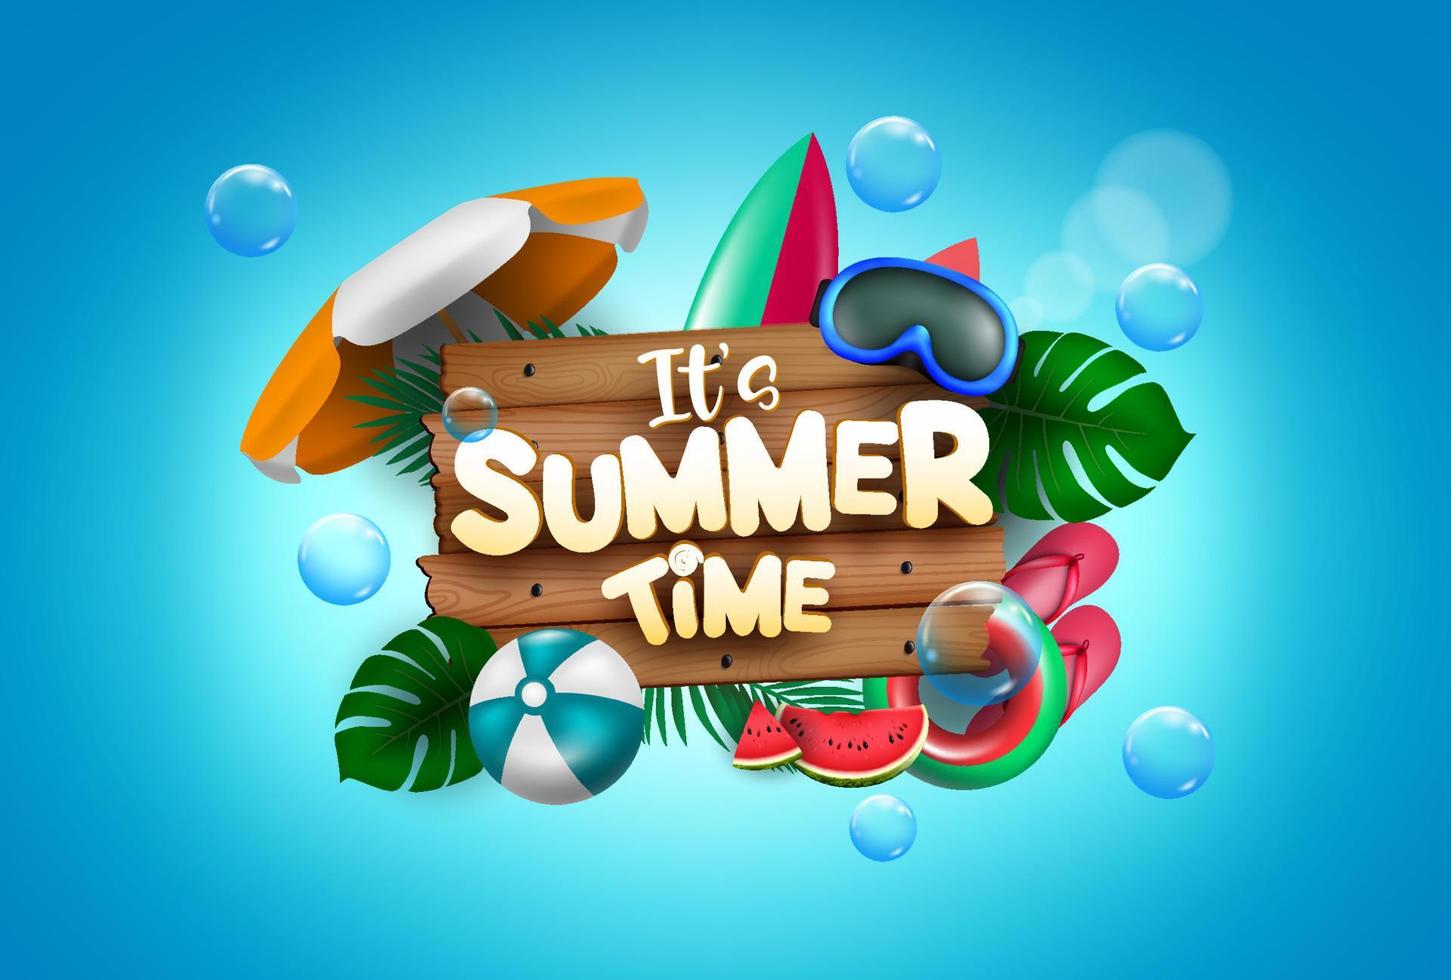 conception de concept de vecteur d'heure d'été. c'est le texte de l'heure d'été avec des éléments de plage colorés comme des lunettes, un ballon de plage, une planche de surf et un flotteur pour la saison des vacances. illustration vectorielle